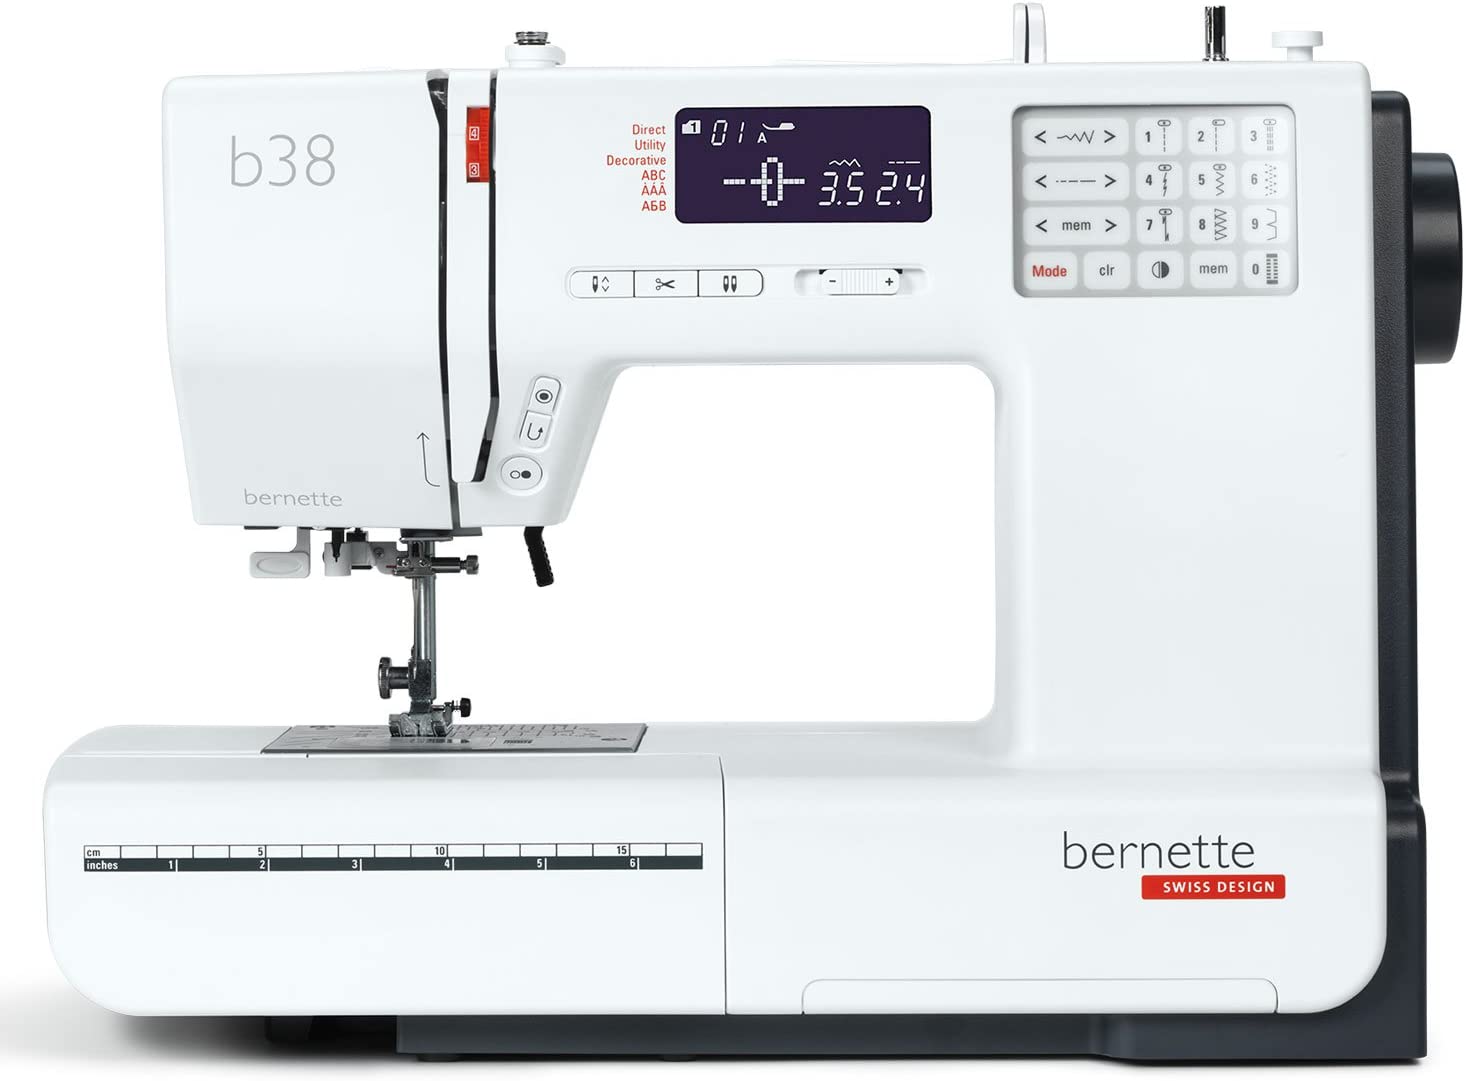 BERNETTE b38 von BERNINA - Nähmaschine mit viel Funktionen - unser HERBSTPREIS online